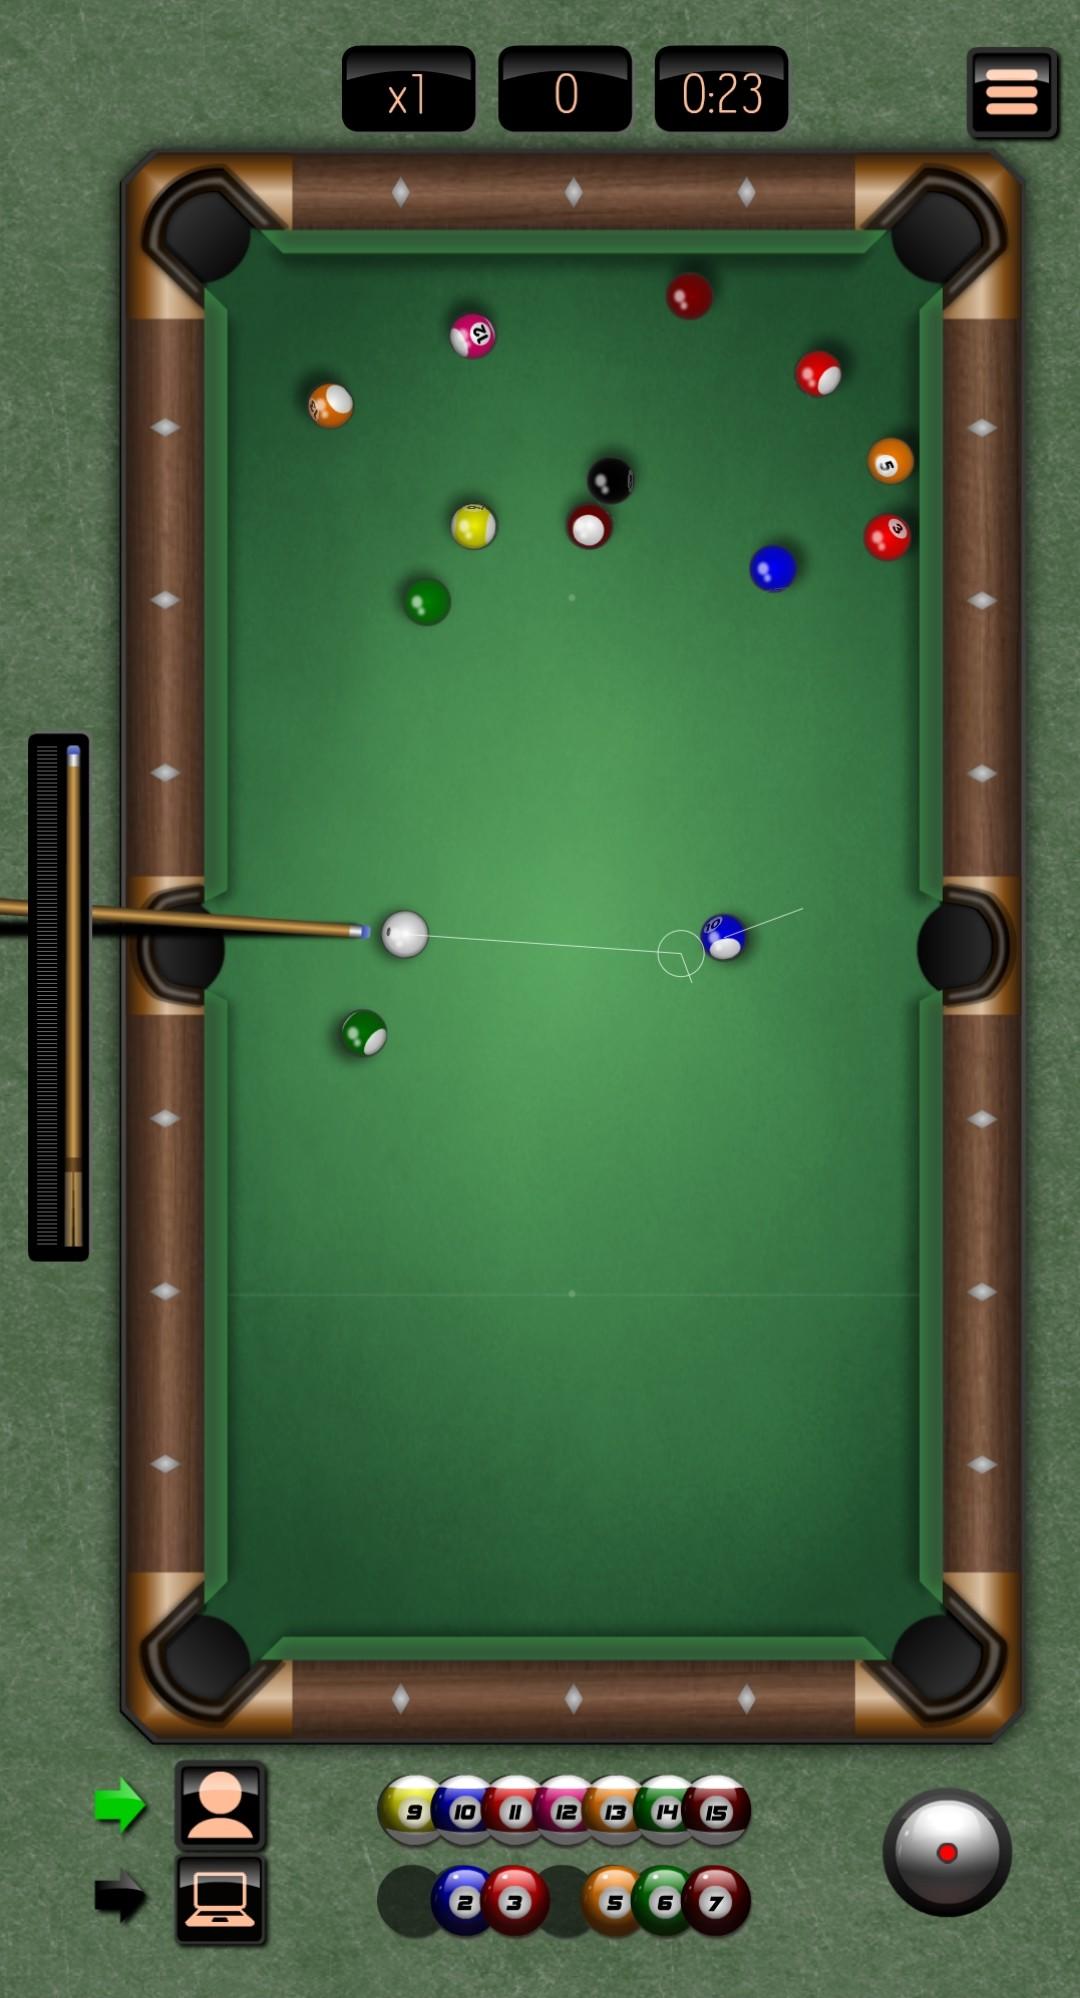 8 Ball 3D online Billiard Game screenshot game